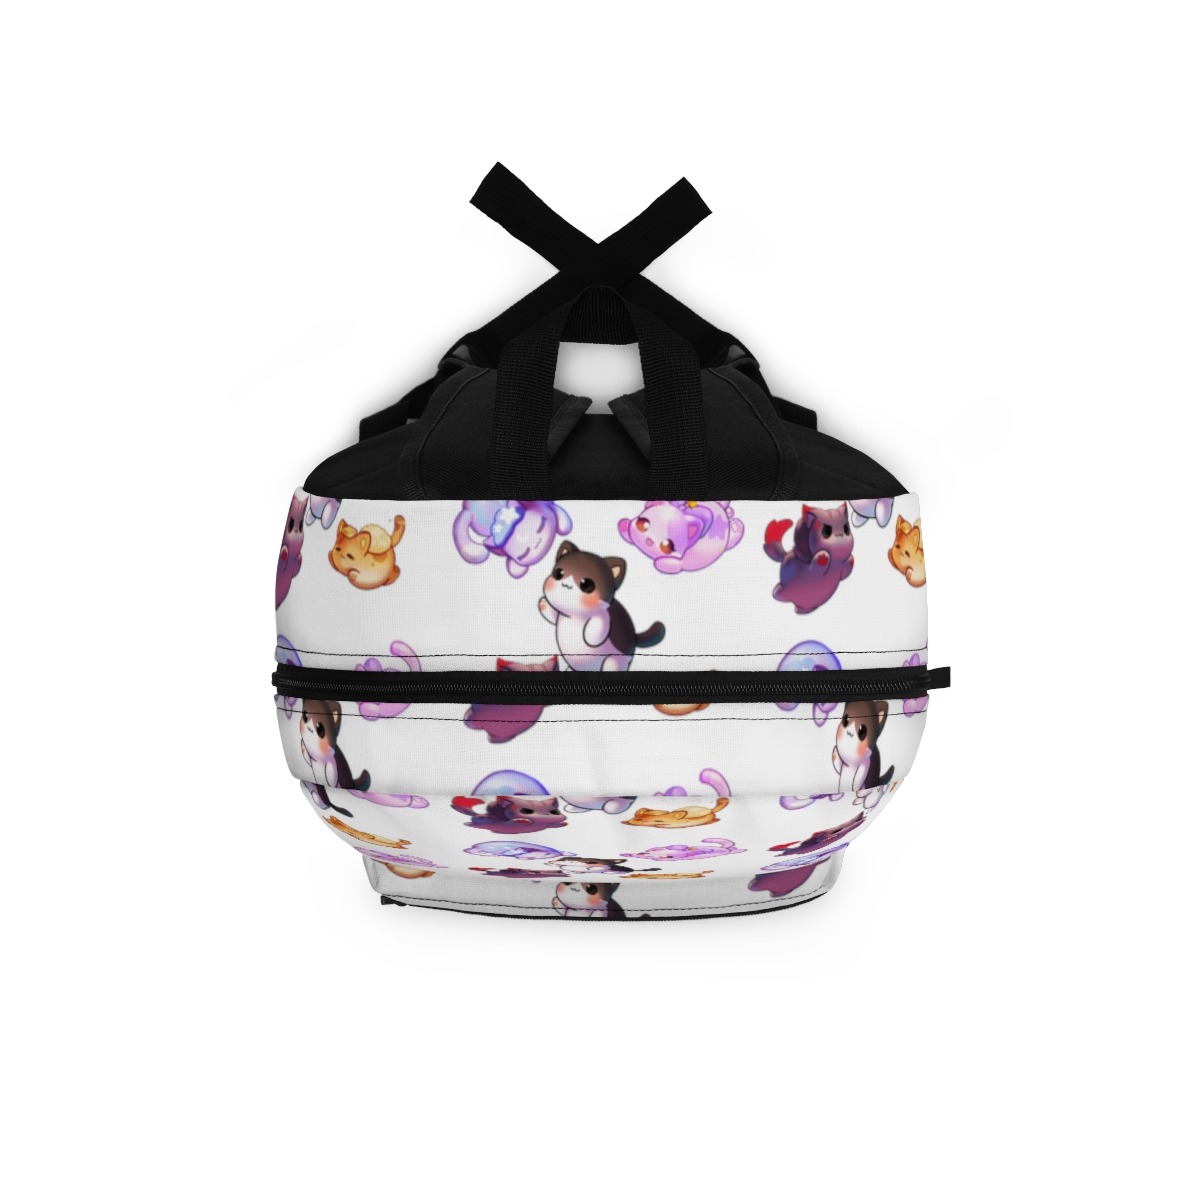 Buy Aphmau cat pink and purple Backpack ⋆ NEXTSHIRT